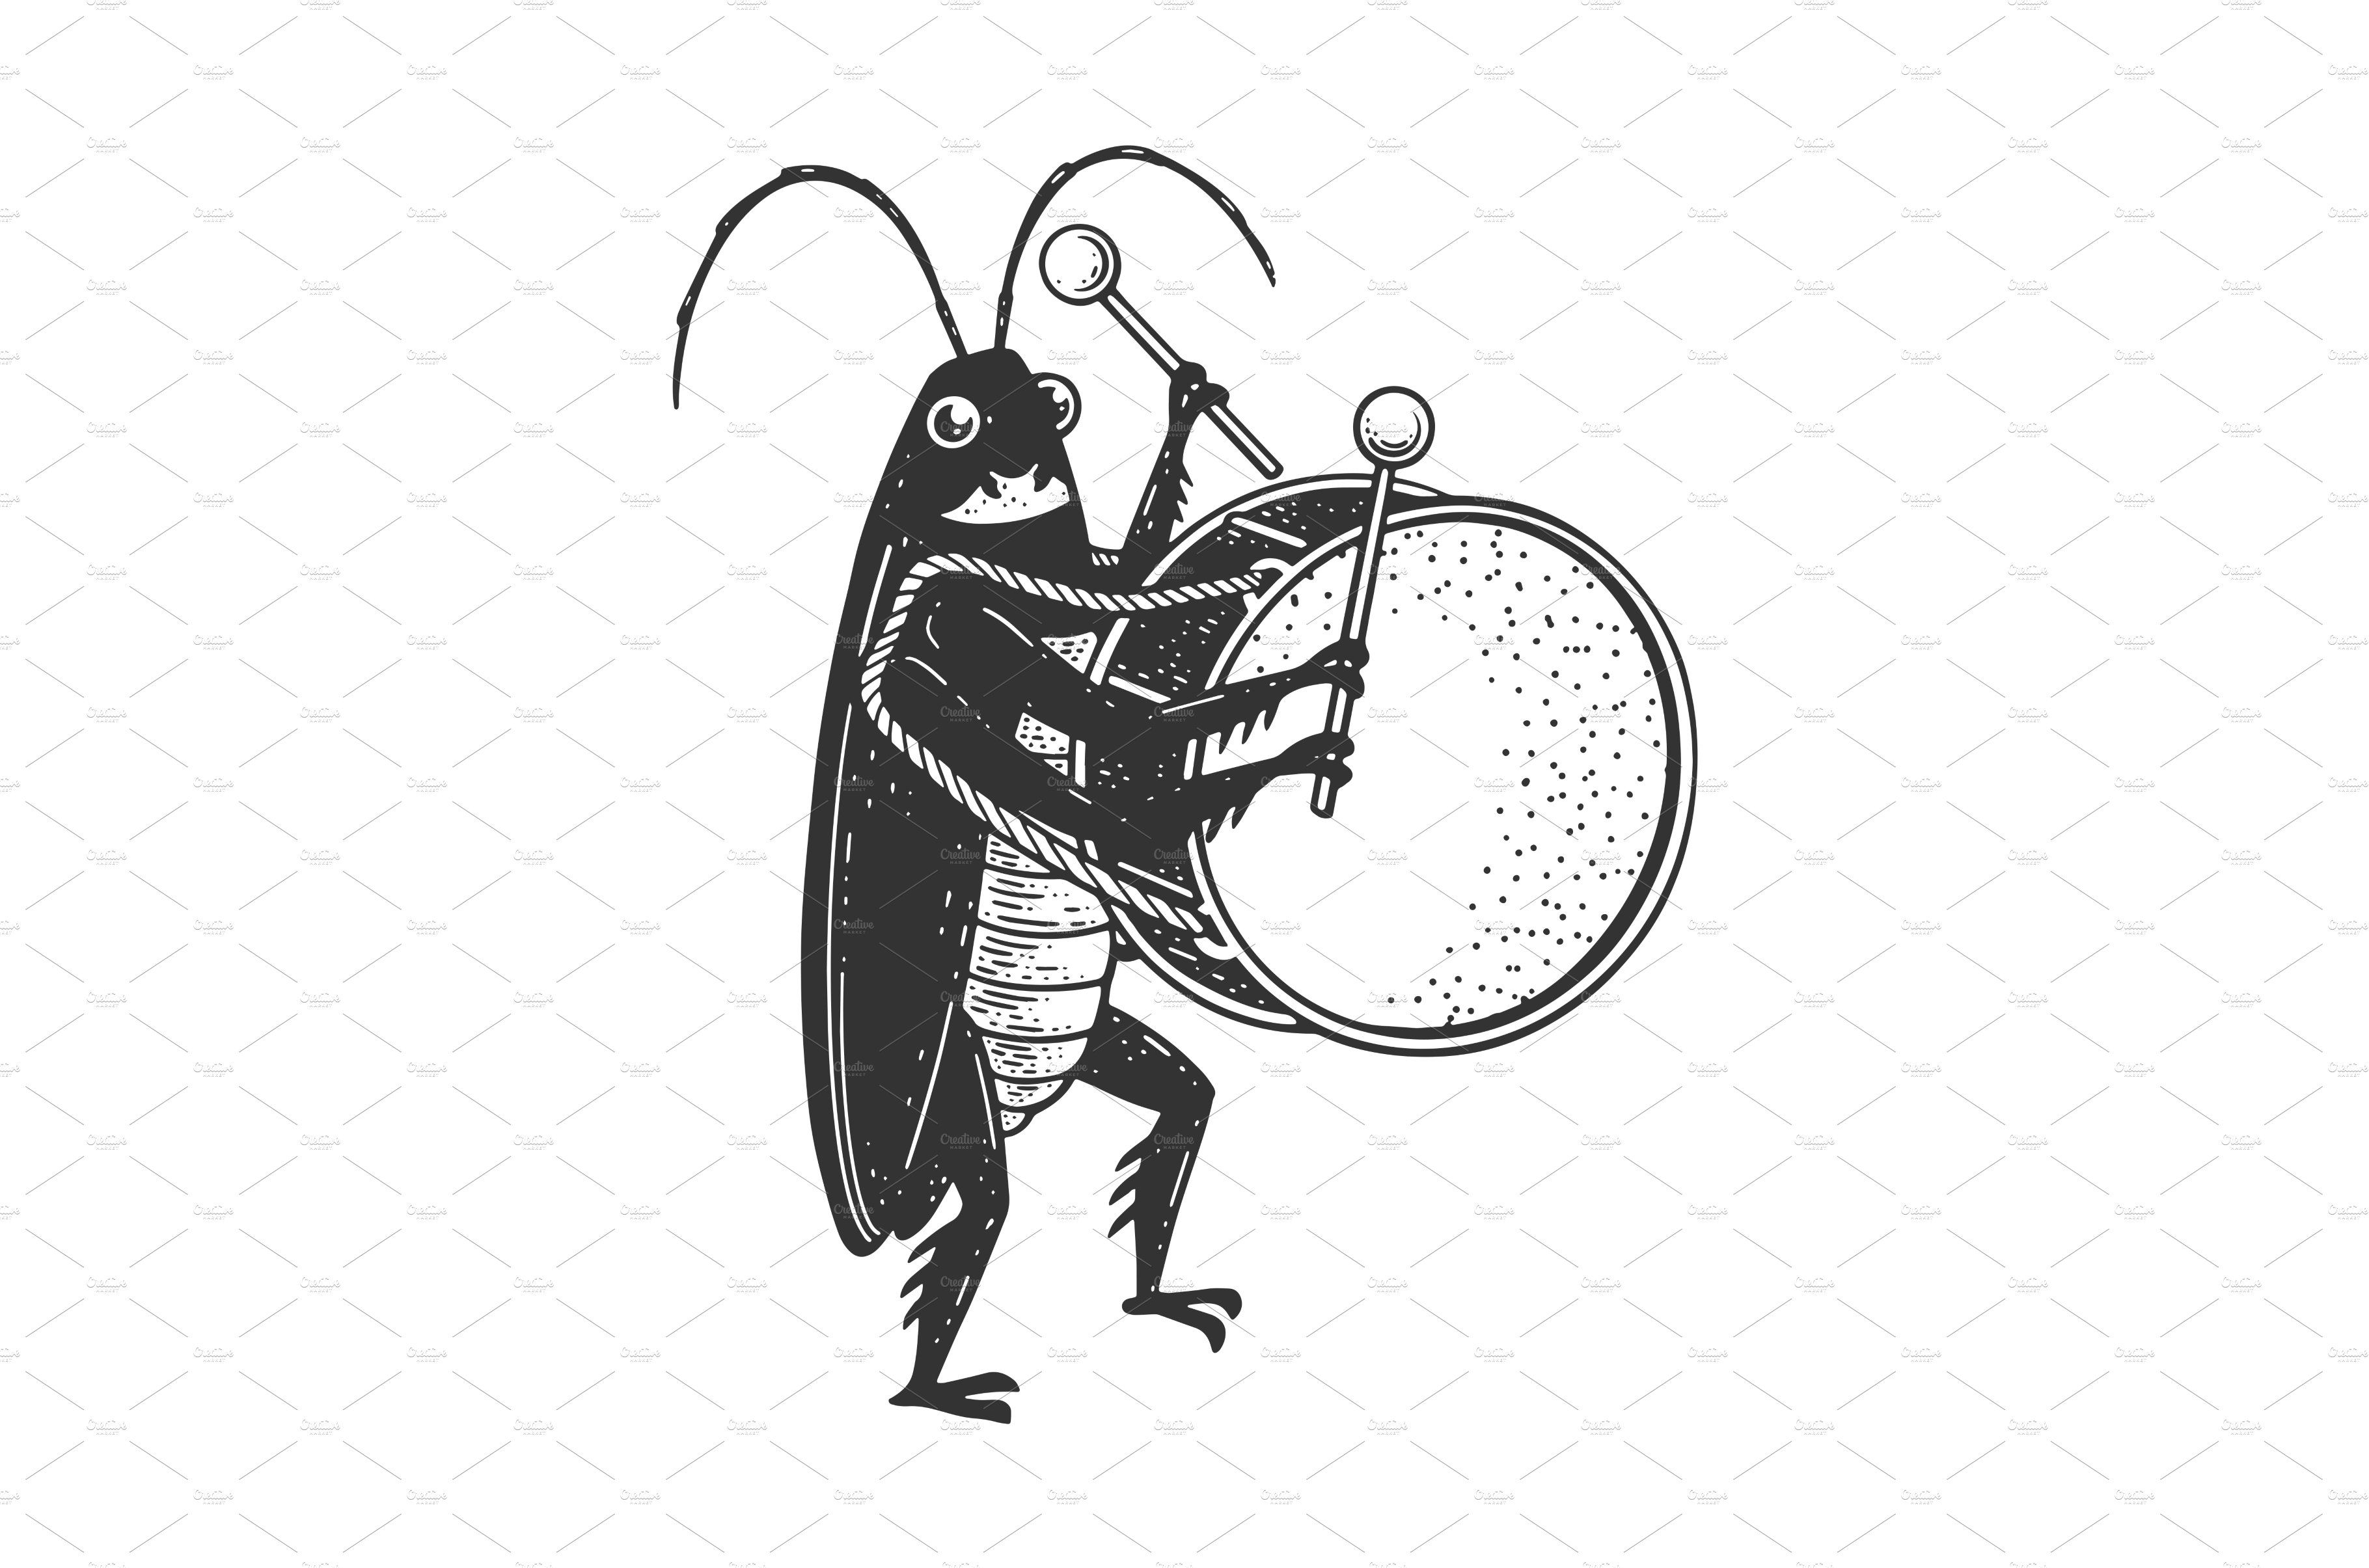 Cockroach big drum sketch vector cover image.